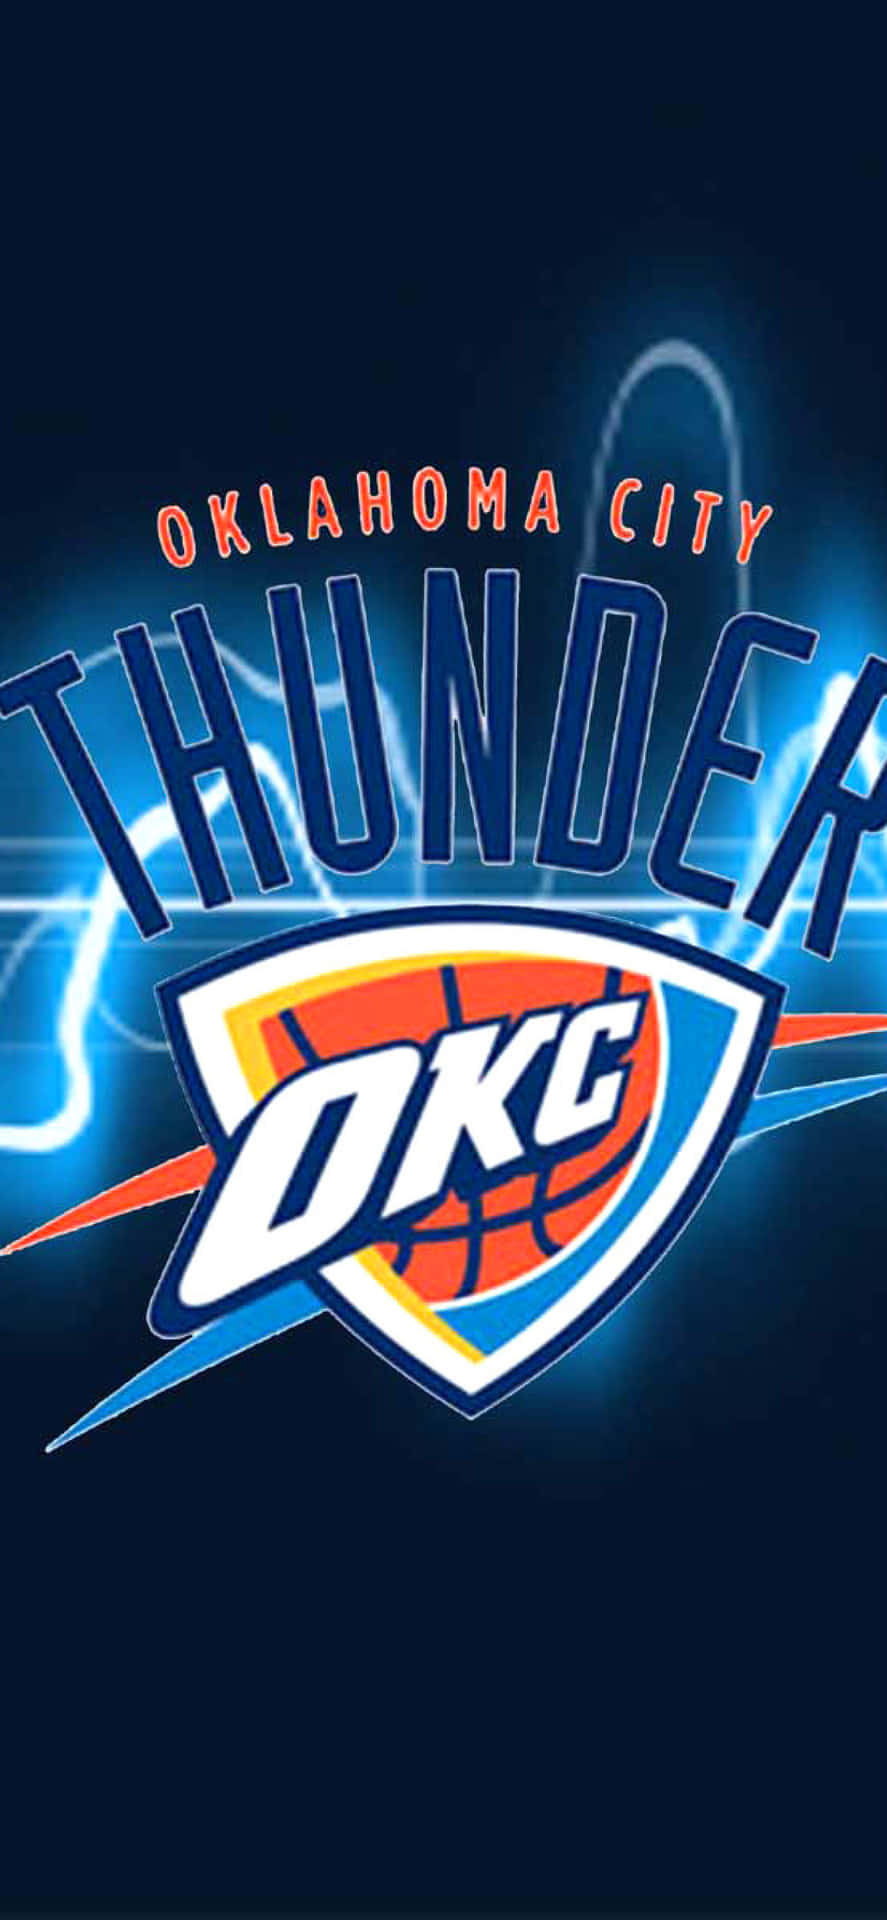 Oklahomacity Thunders Okc Logo Nba League - Oklahoma City Thunders Okc Logotyp I Nba-ligan Wallpaper